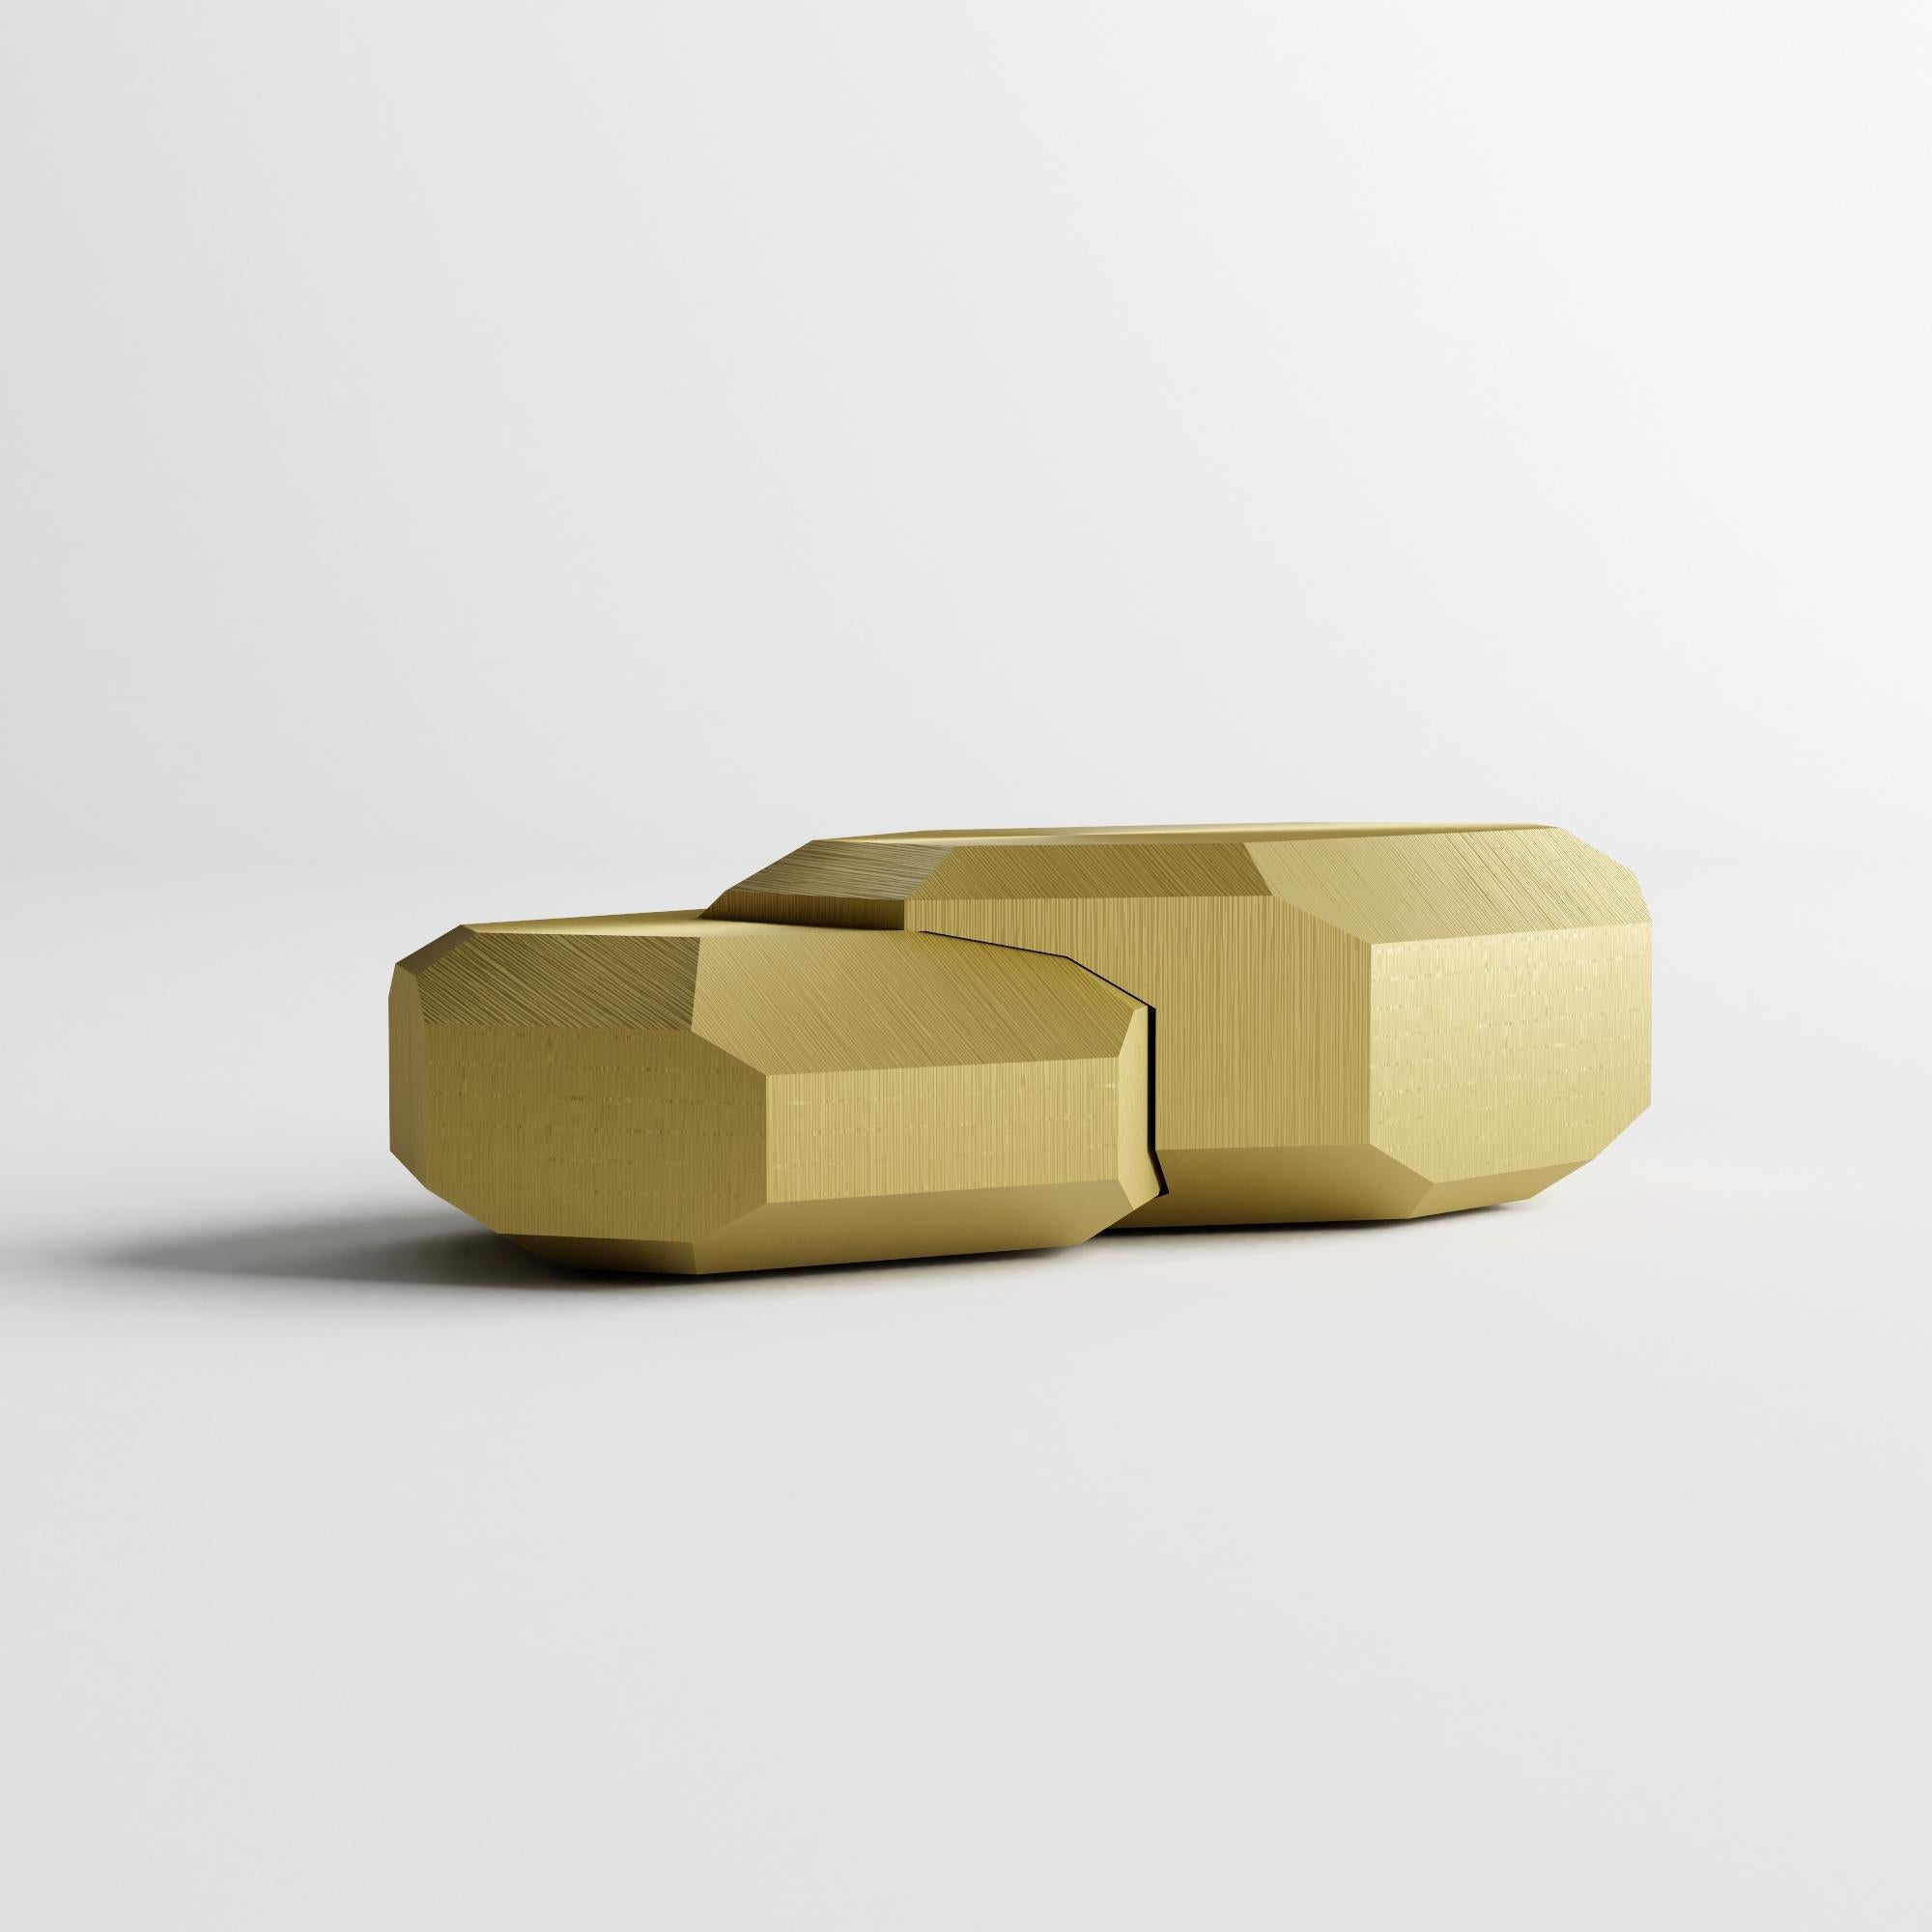 Kristall-Couchtisch von Kasadamo und Pant, französischer Künstler - goldene Version : Dieses Meisterwerk wurde in Zusammenarbeit mit Pant (französischer Künstler) im 3D-Druck mit Materialien aus biologischem Anbau entwickelt. Dieses Facettendesign